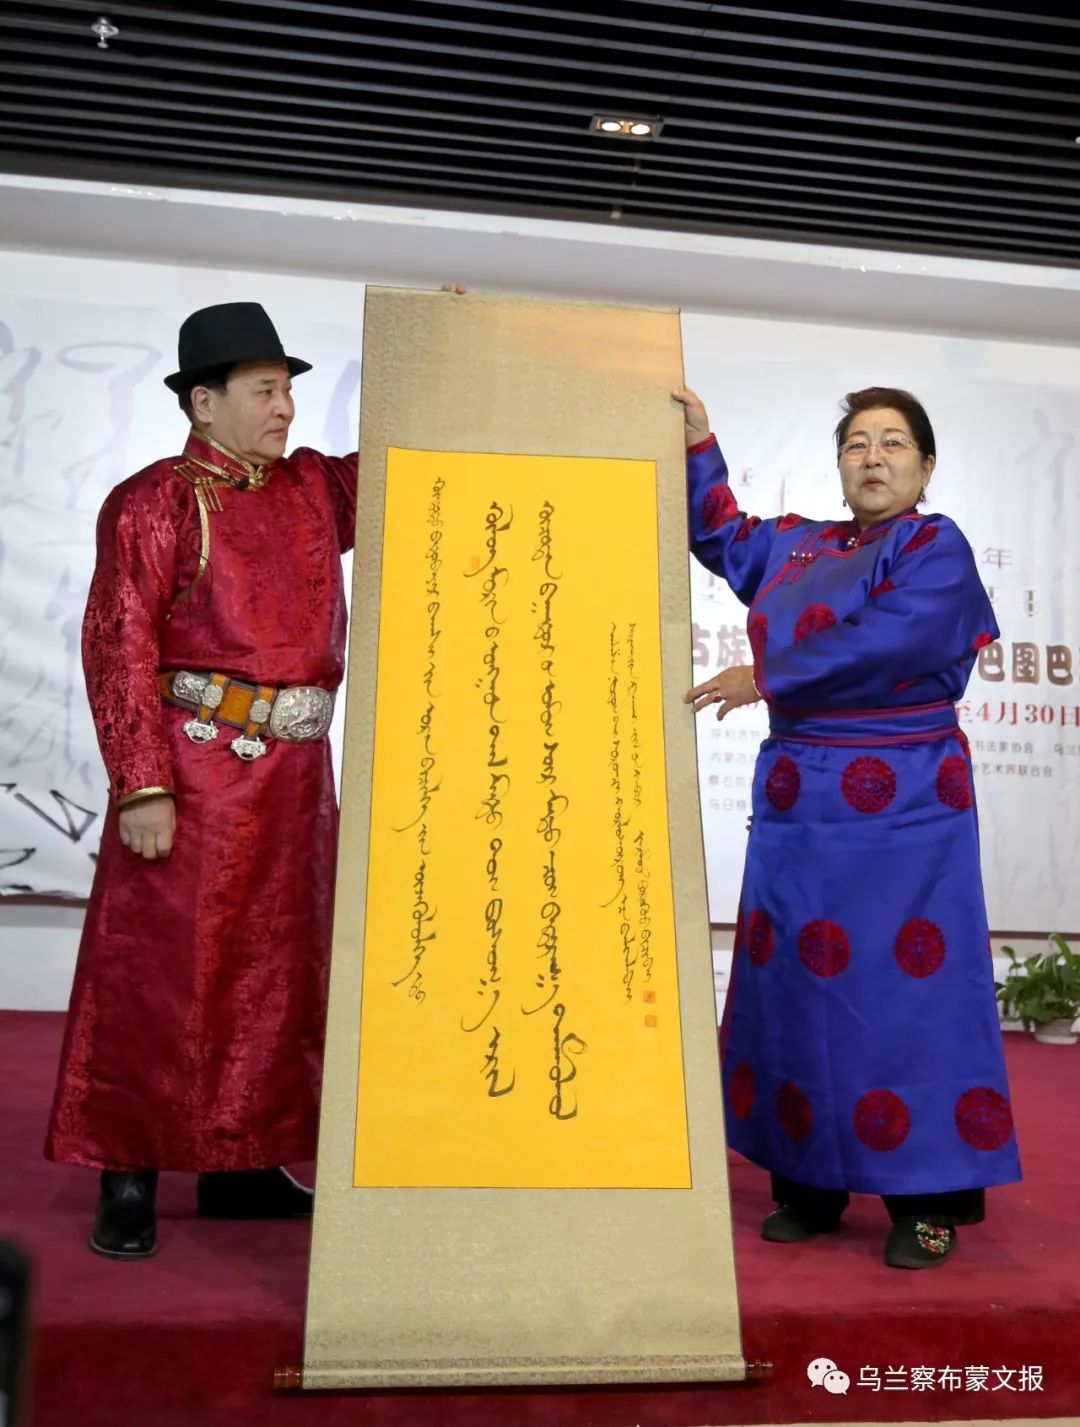 《蒙古文化魂宝——巴图巴雅尔蒙古文书法展》在呼和浩特举办 第17张